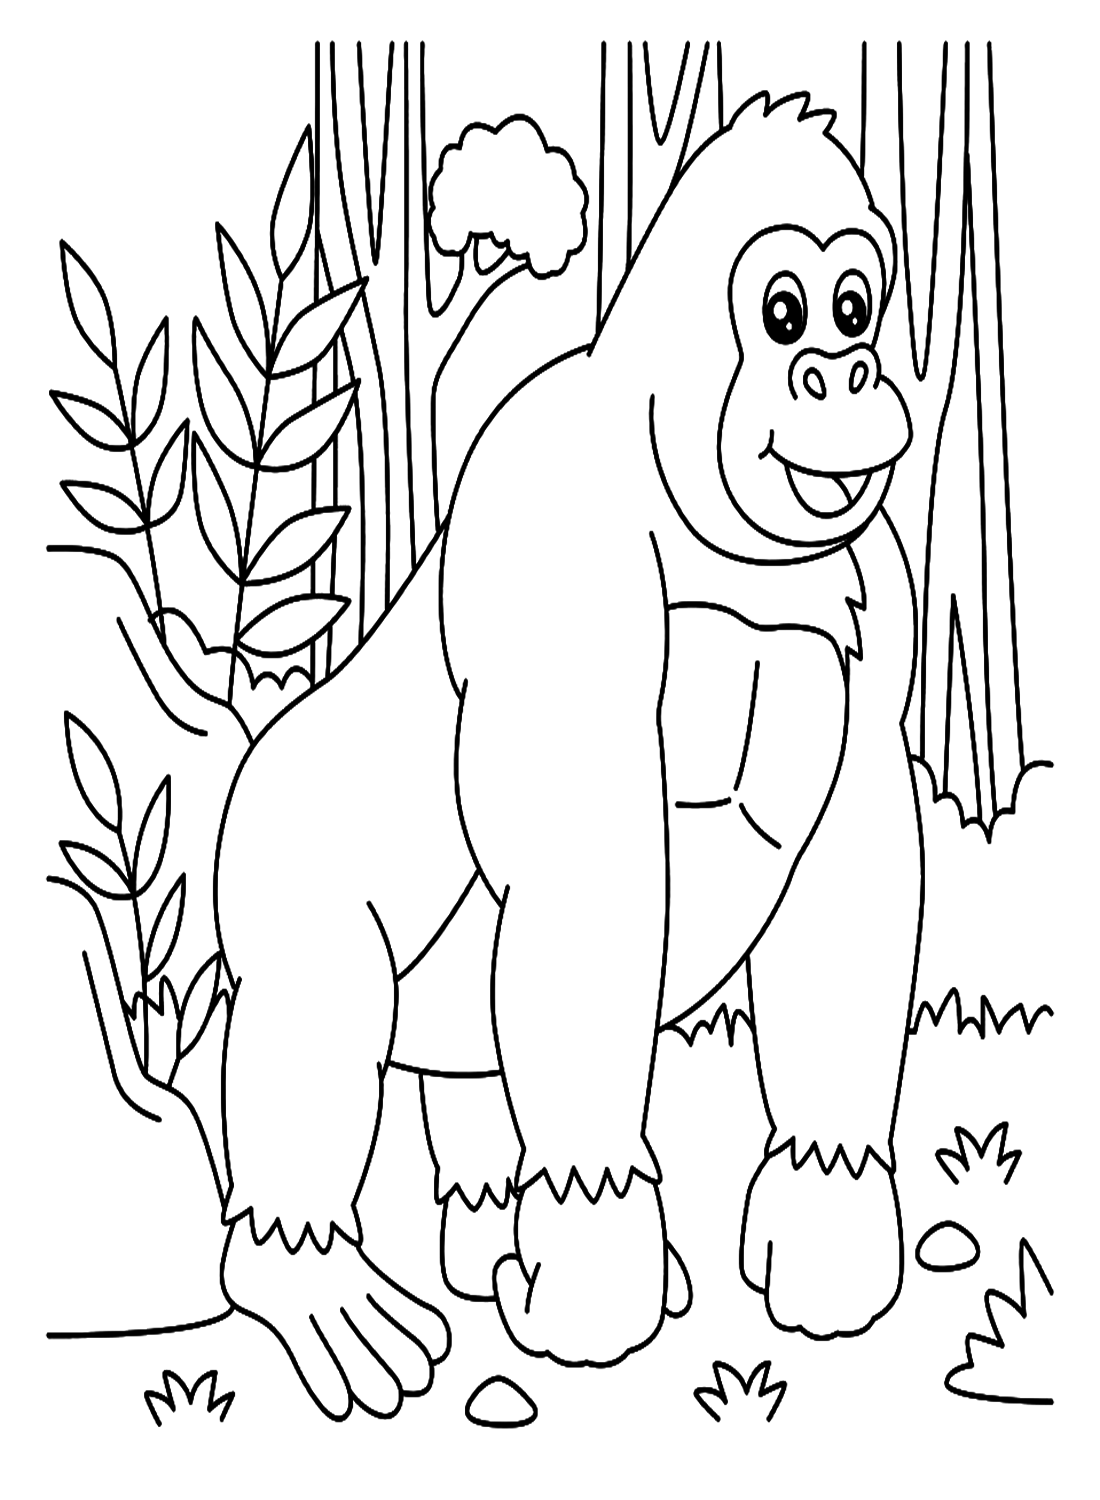 Gorilla nella foresta from Gorilla